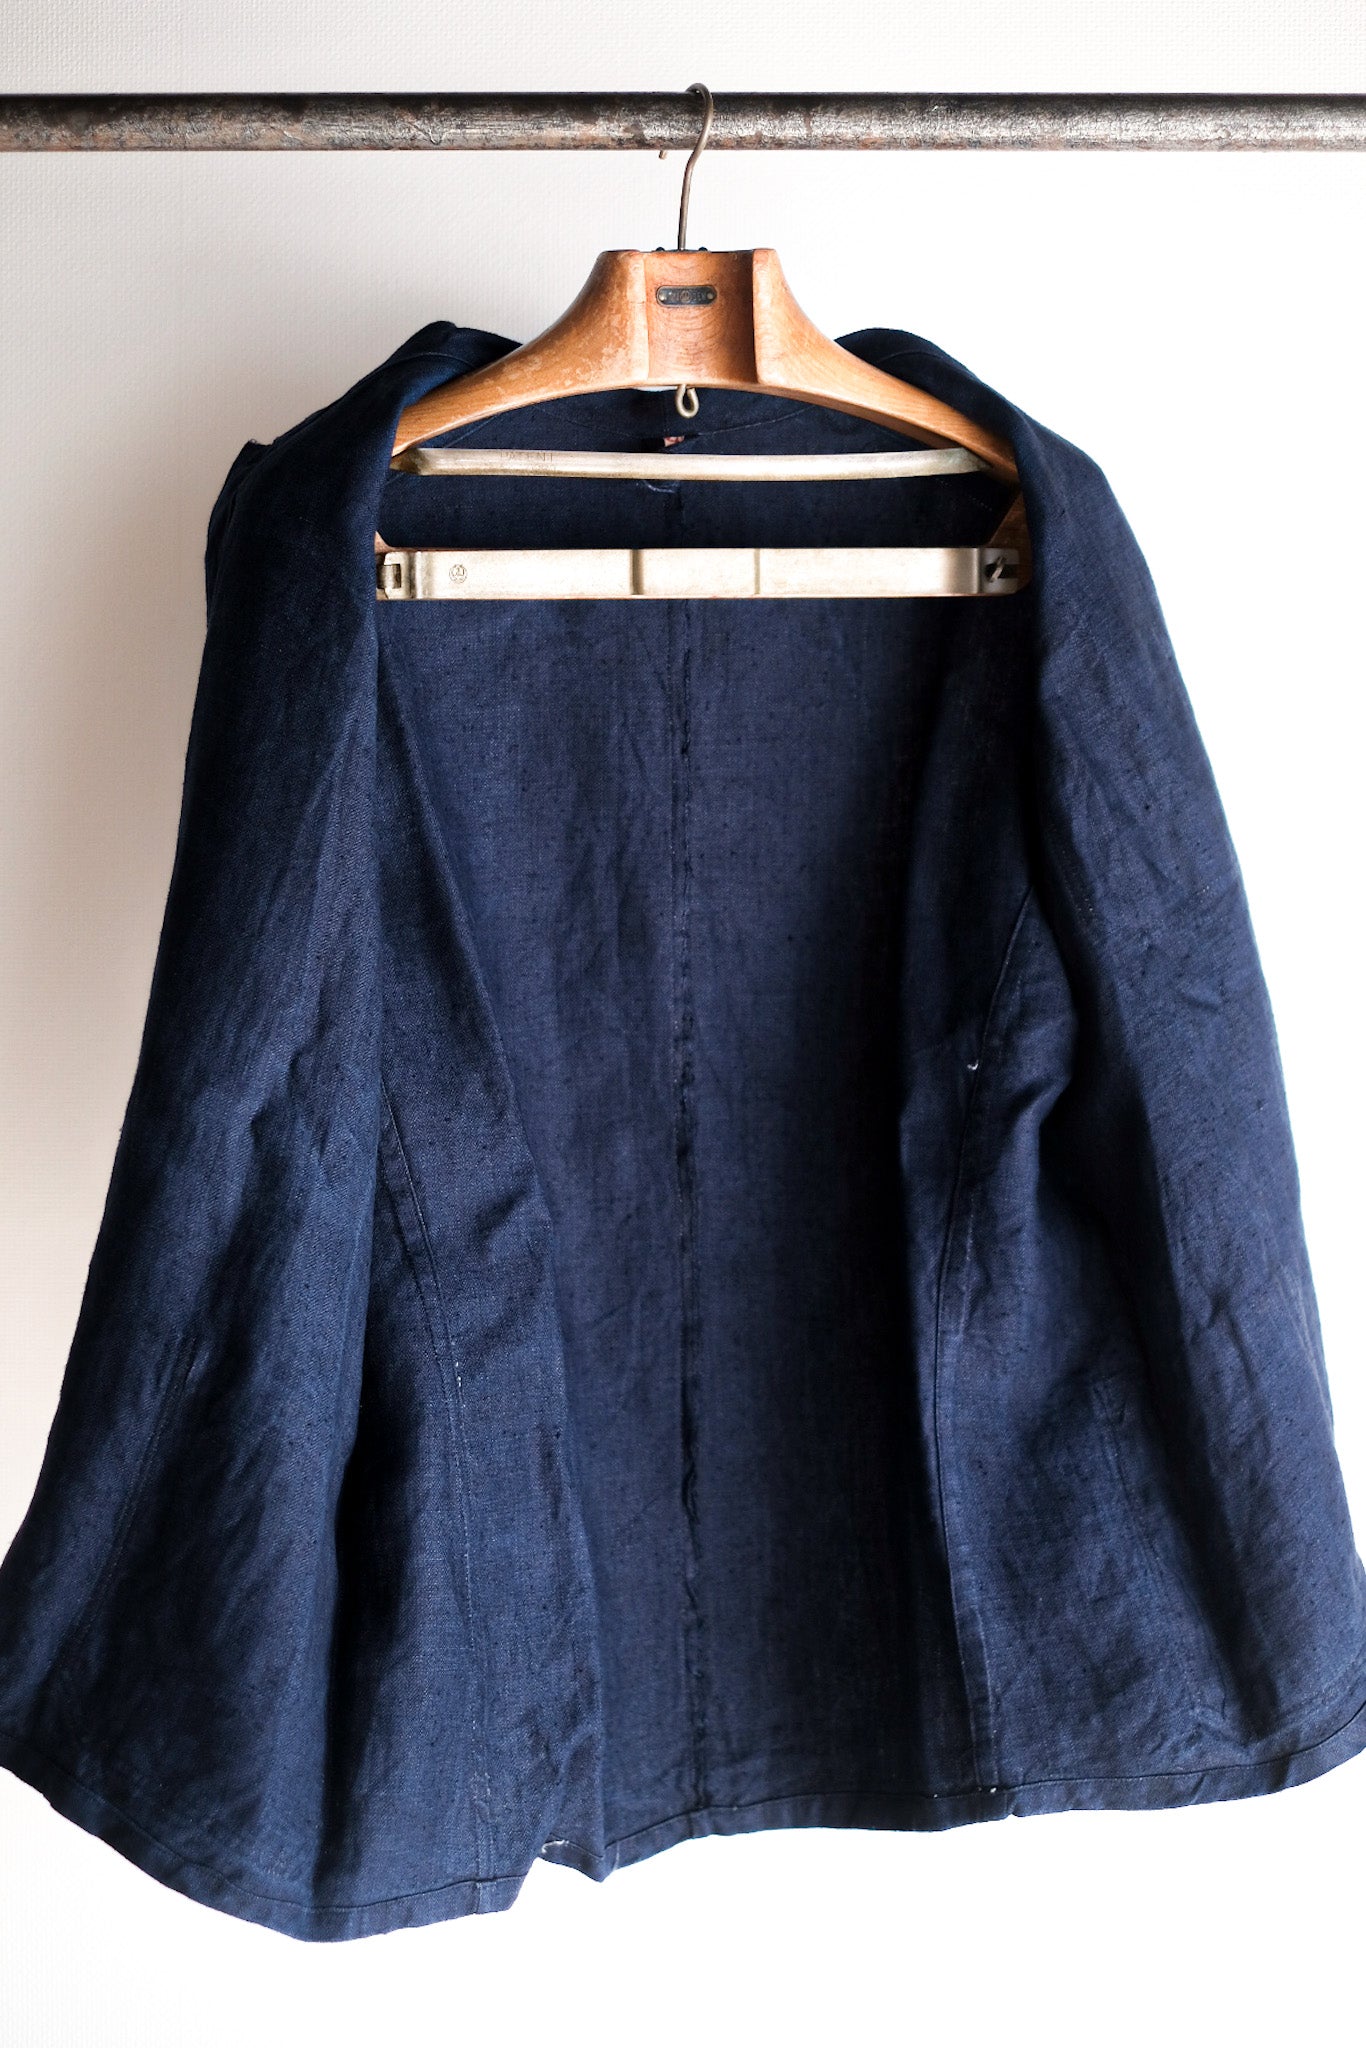 [〜40年代]法國復古靛藍HBT亞麻工作夾克